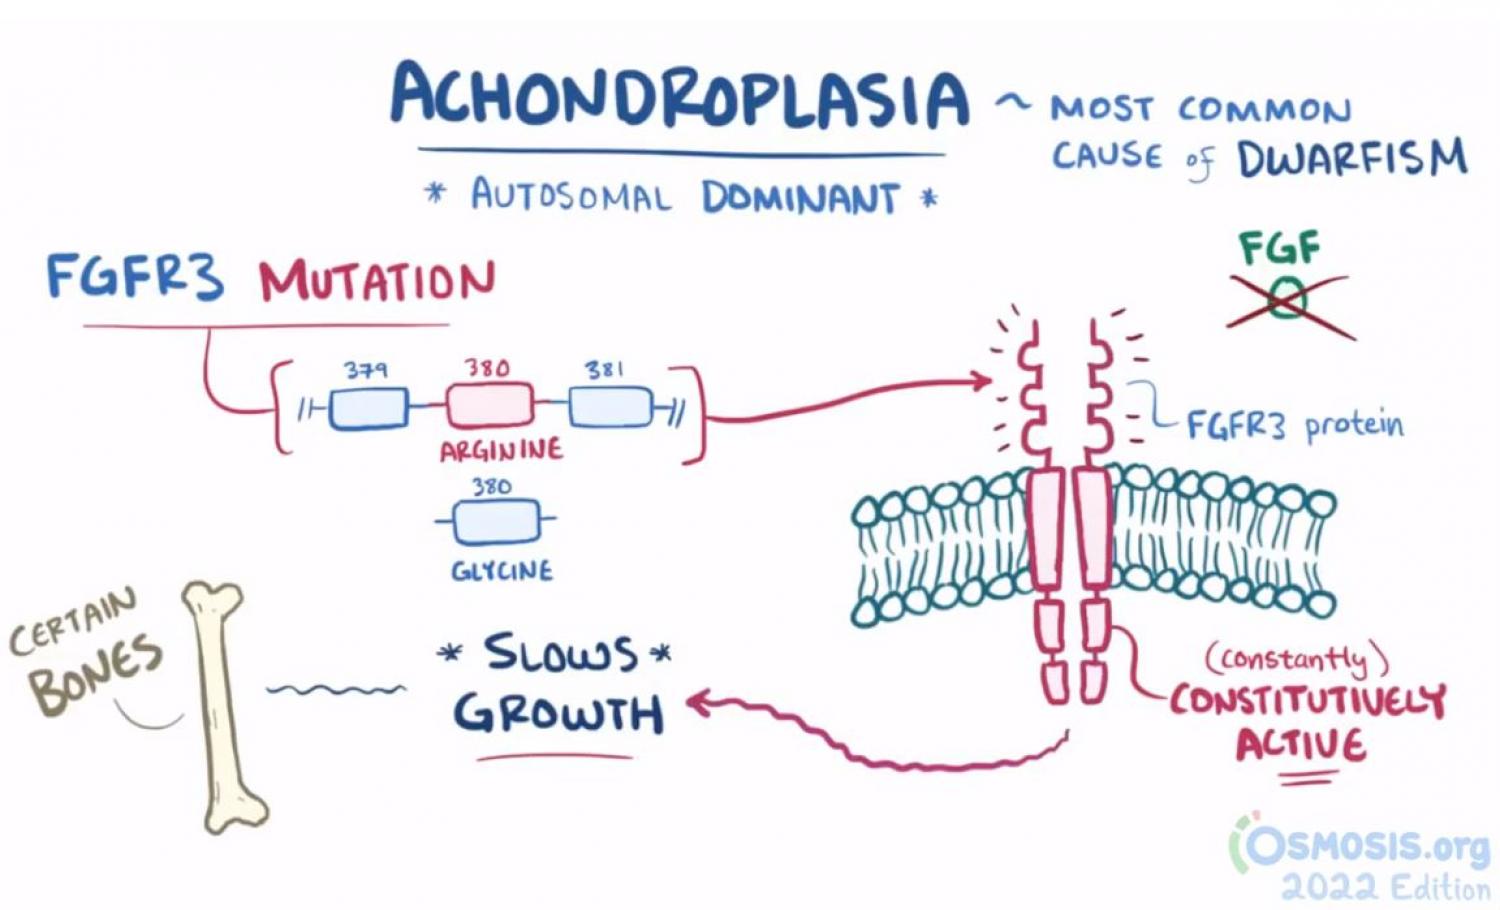 symptoms of achondroplasia